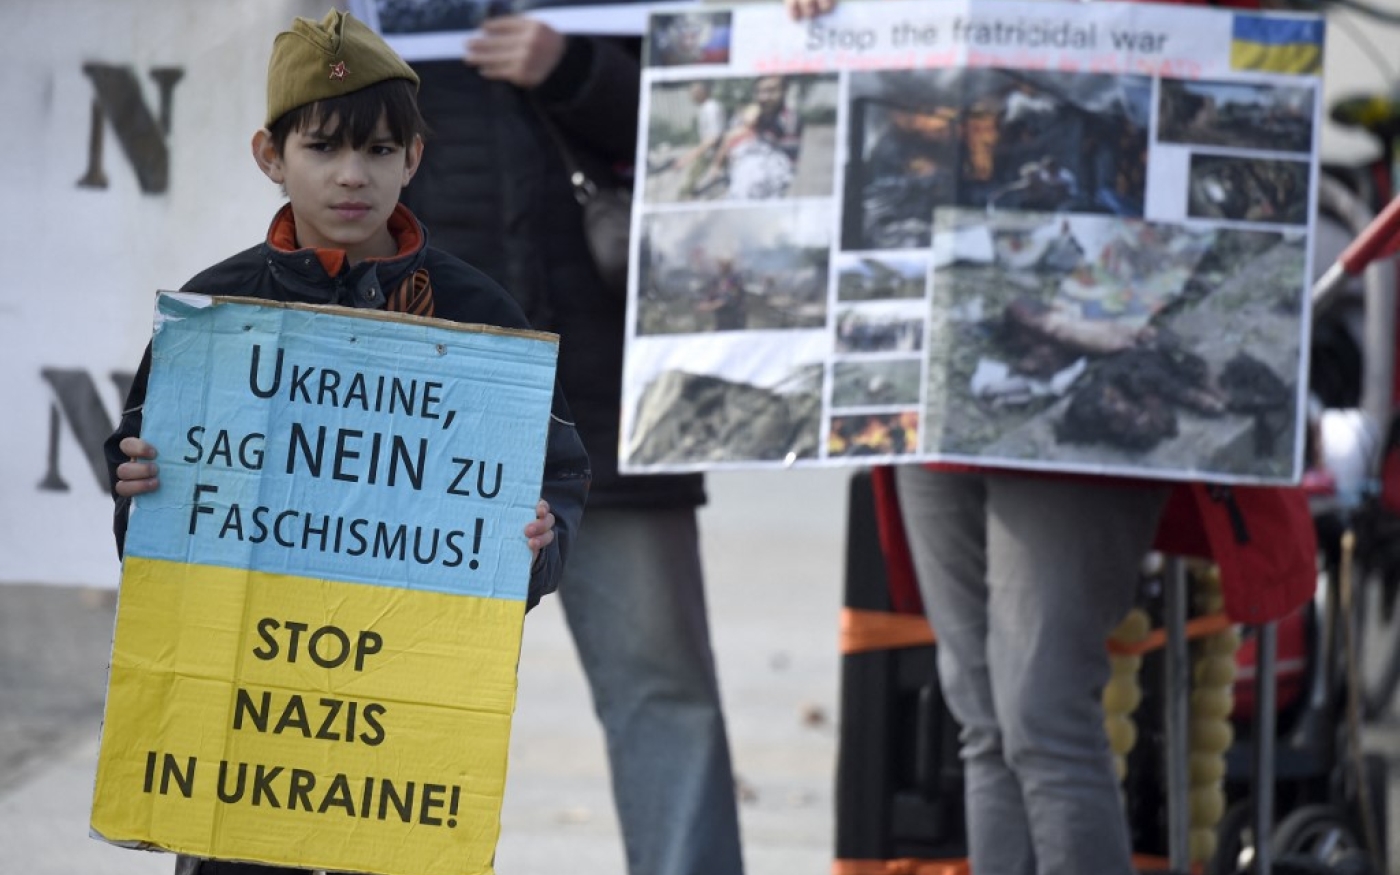 Des partisans des rebelles ukrainiens pro-russes brandissent des photos montrant des dégâts, tandis qu’un enfant tient une pancarte aux couleurs de l’Ukraine sur laquelle on peut lire « Ukraine, dis non au fascisme » et « Stop aux nazis en Ukraine ! », le 16 mars 2015 à Berlin (AFP)